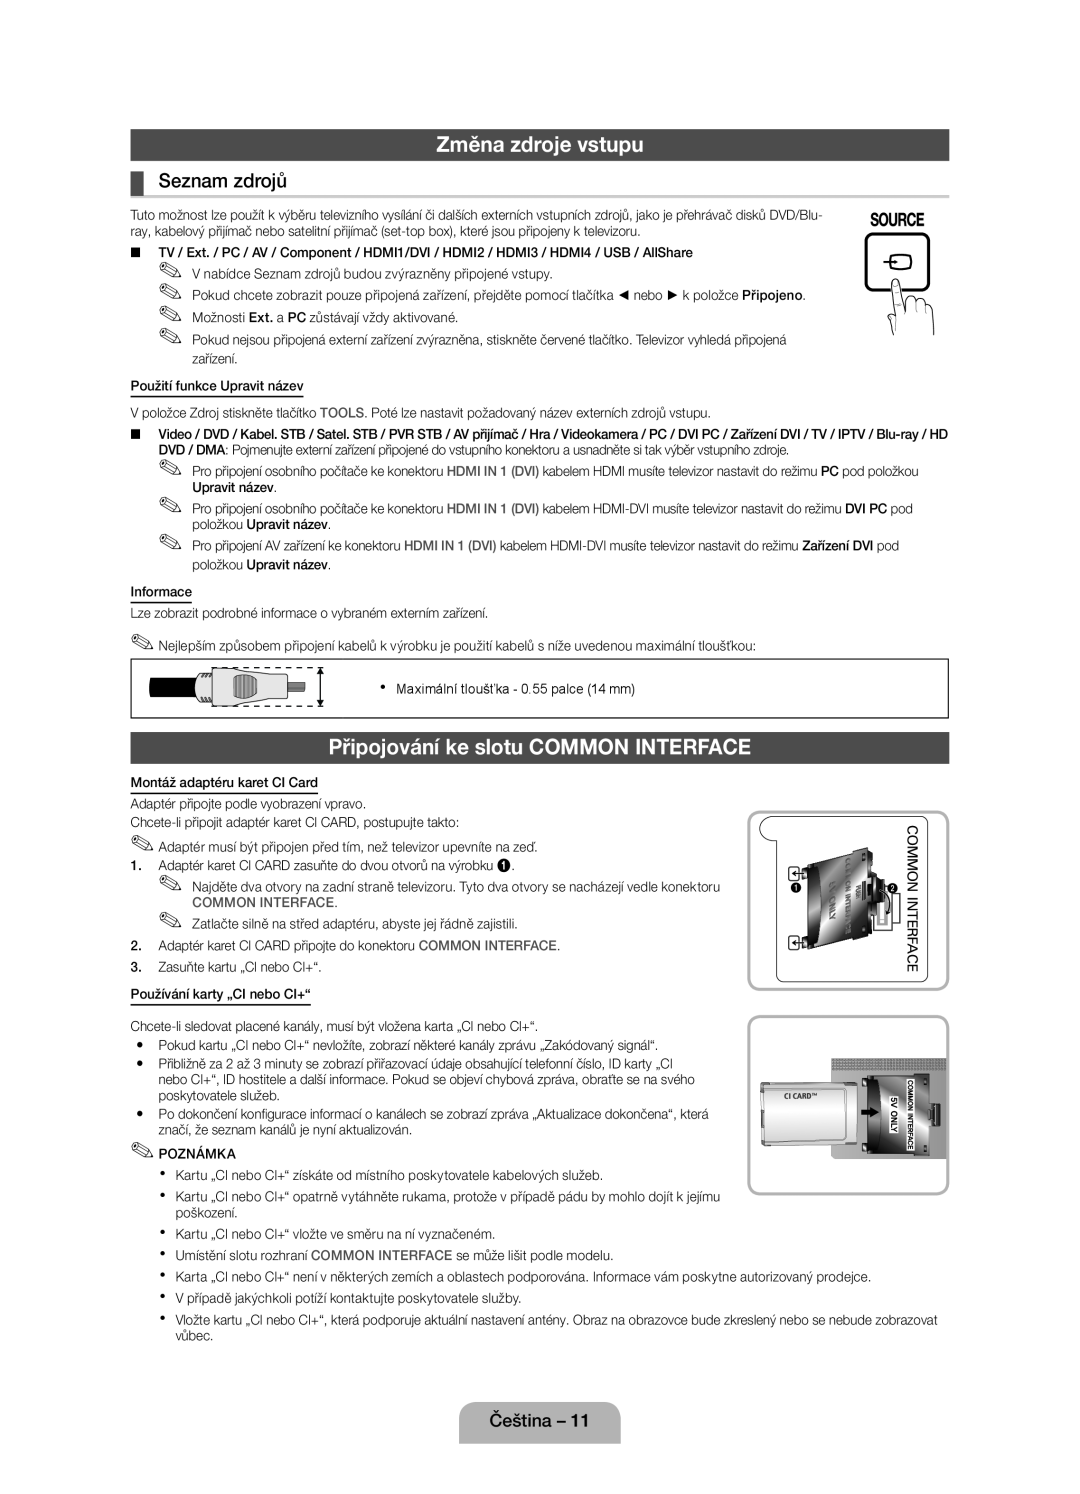 Samsung UE46D5000PWXBT manual Změna zdroje vstupu, Připojování ke slotu COMMON INTERFACE, Seznam zdrojů, Common Interface 